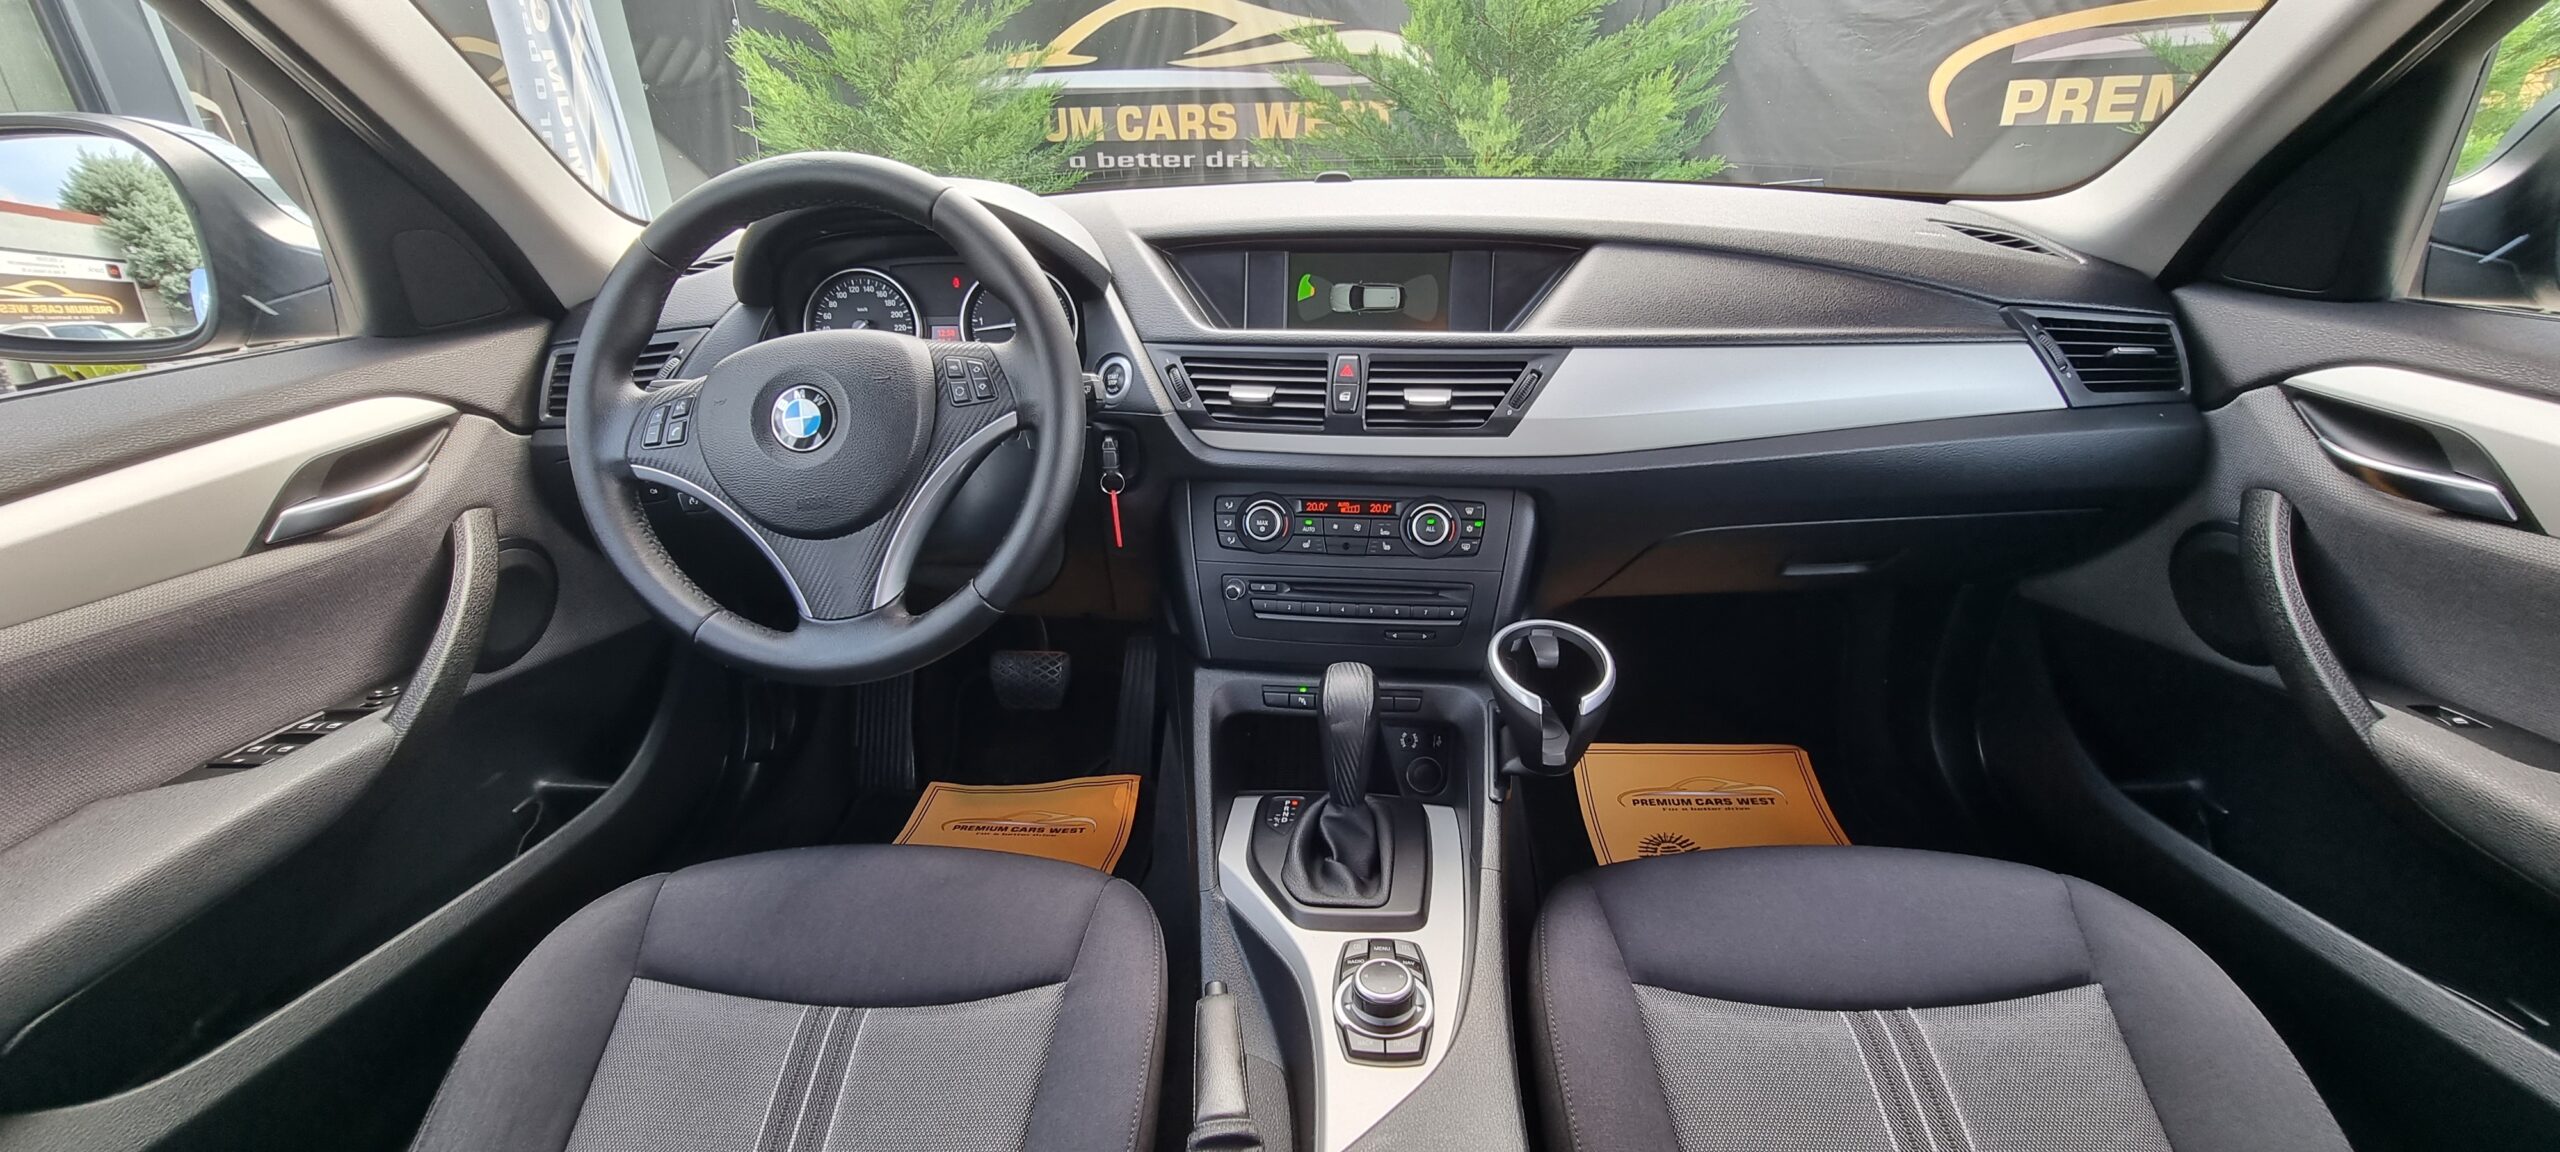 BMW X1 X-DRIVE, 2.0 DIESEL, AN 2010